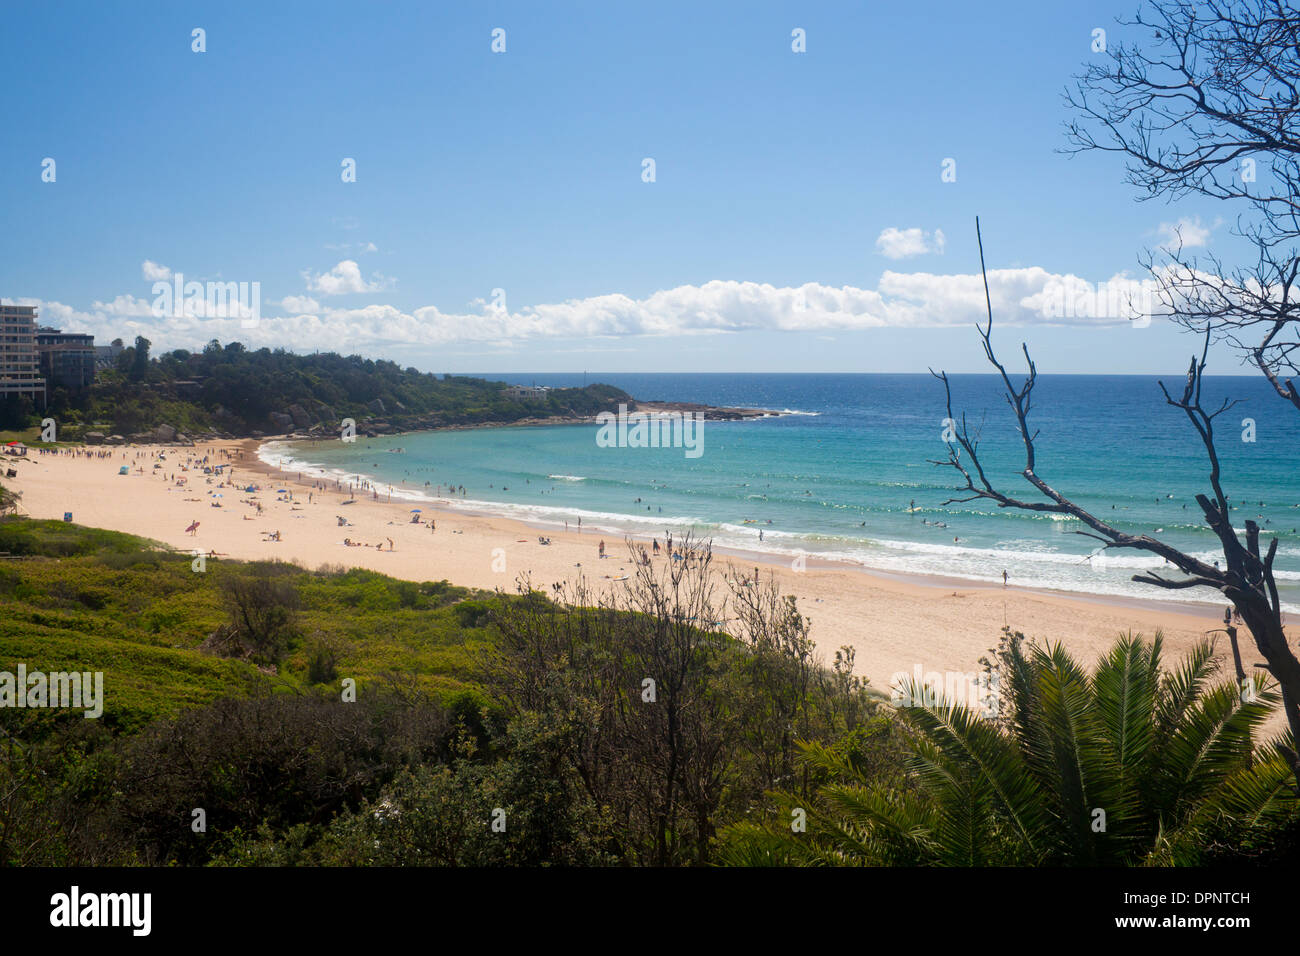 Playa de agua dulce con los surfistas de mar Playas del Norte Warringah Sydney, New South Wales Australia Foto de stock